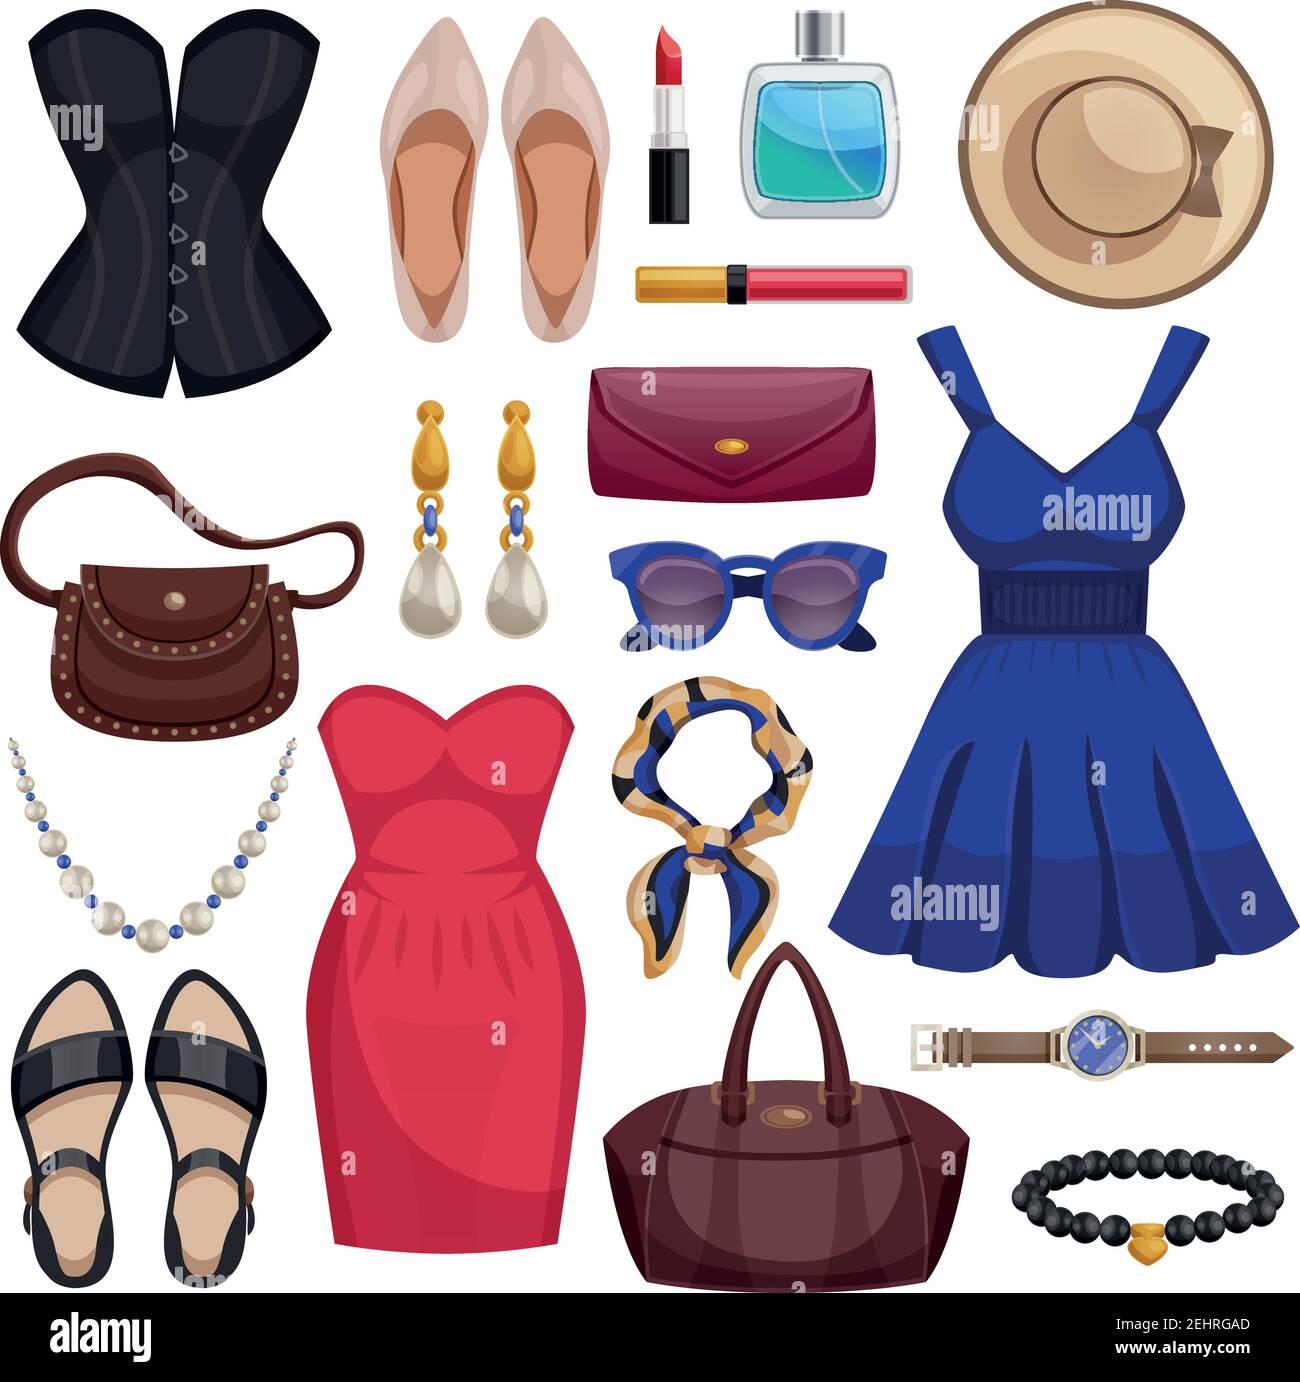 Ensemble d'accessoires femme coloré et isolé Icon avec robe de vêtements chaussures sacs à main accessoires et cosmétiques illustration vectorielle Illustration de Vecteur